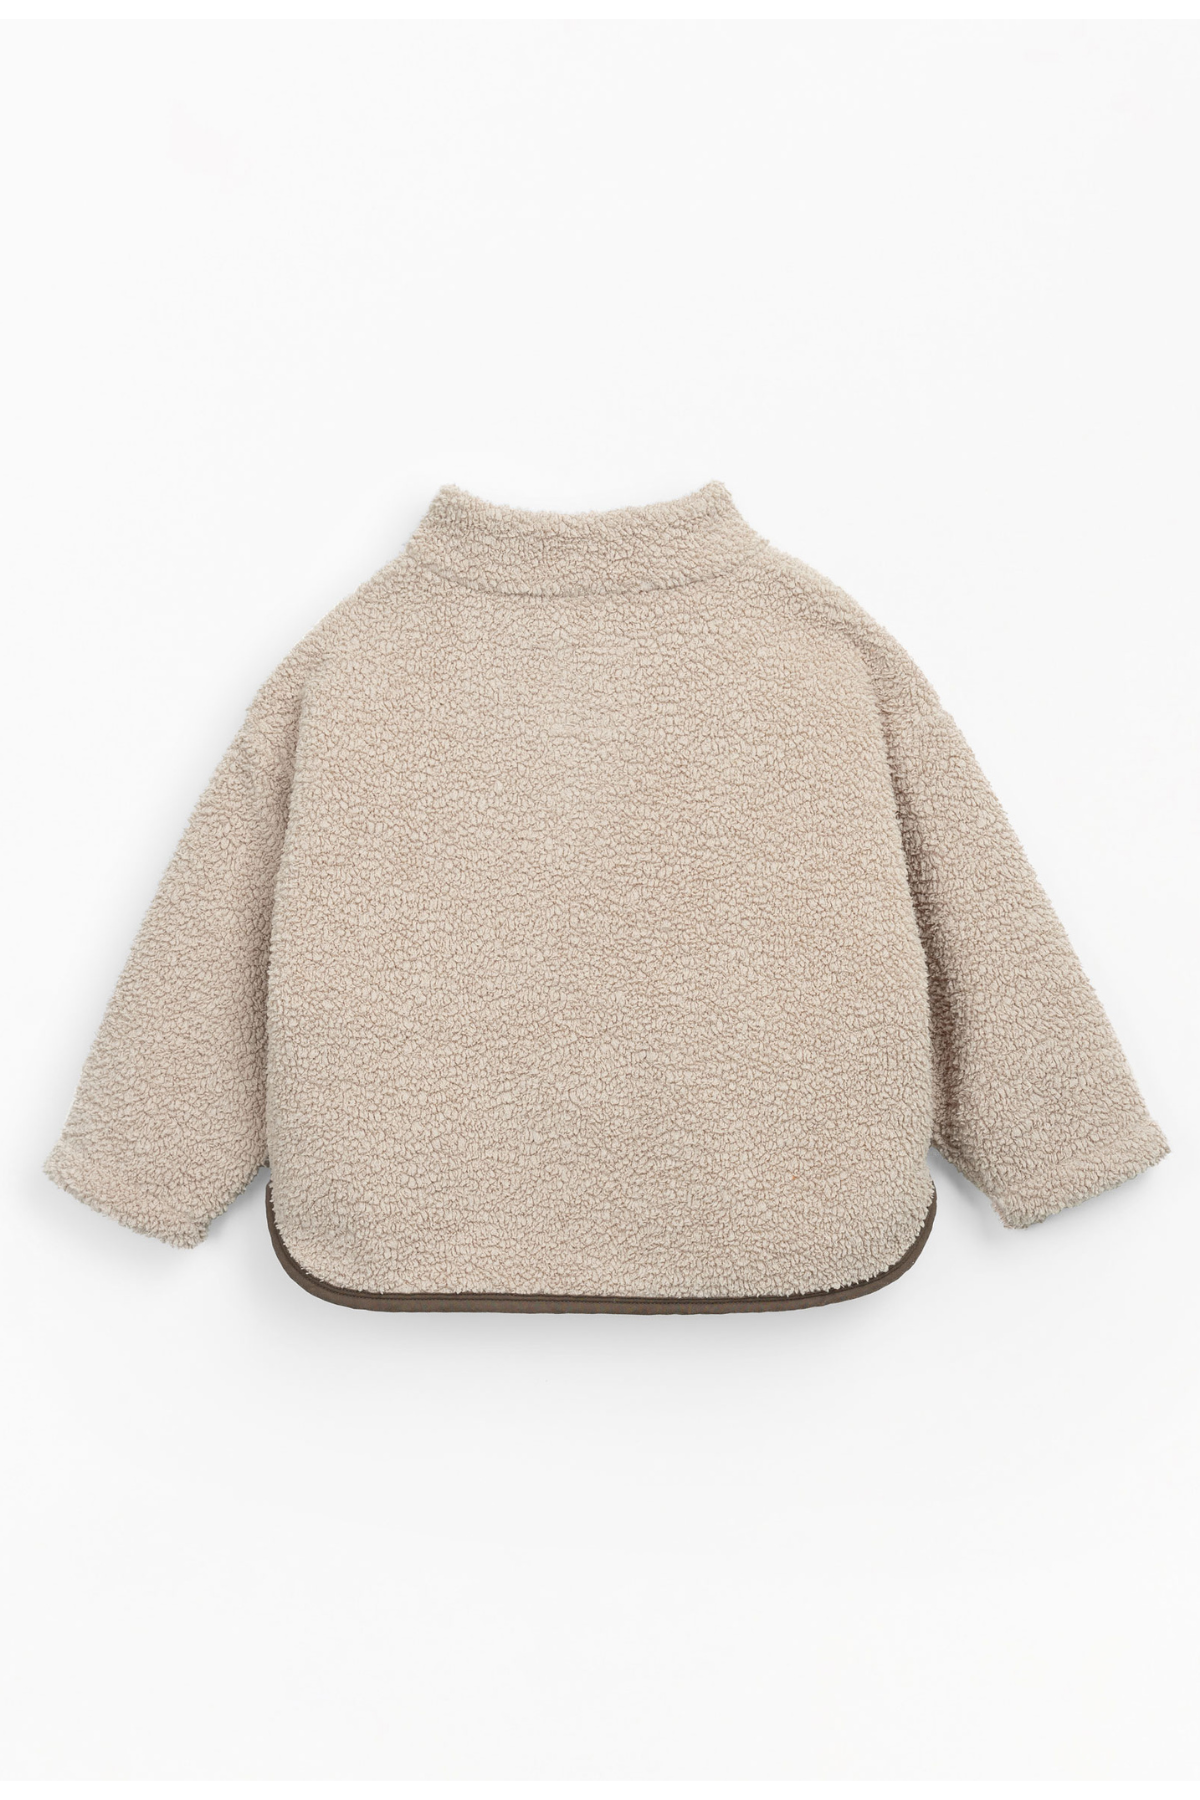 Teddyfleece Sweater "Susana"